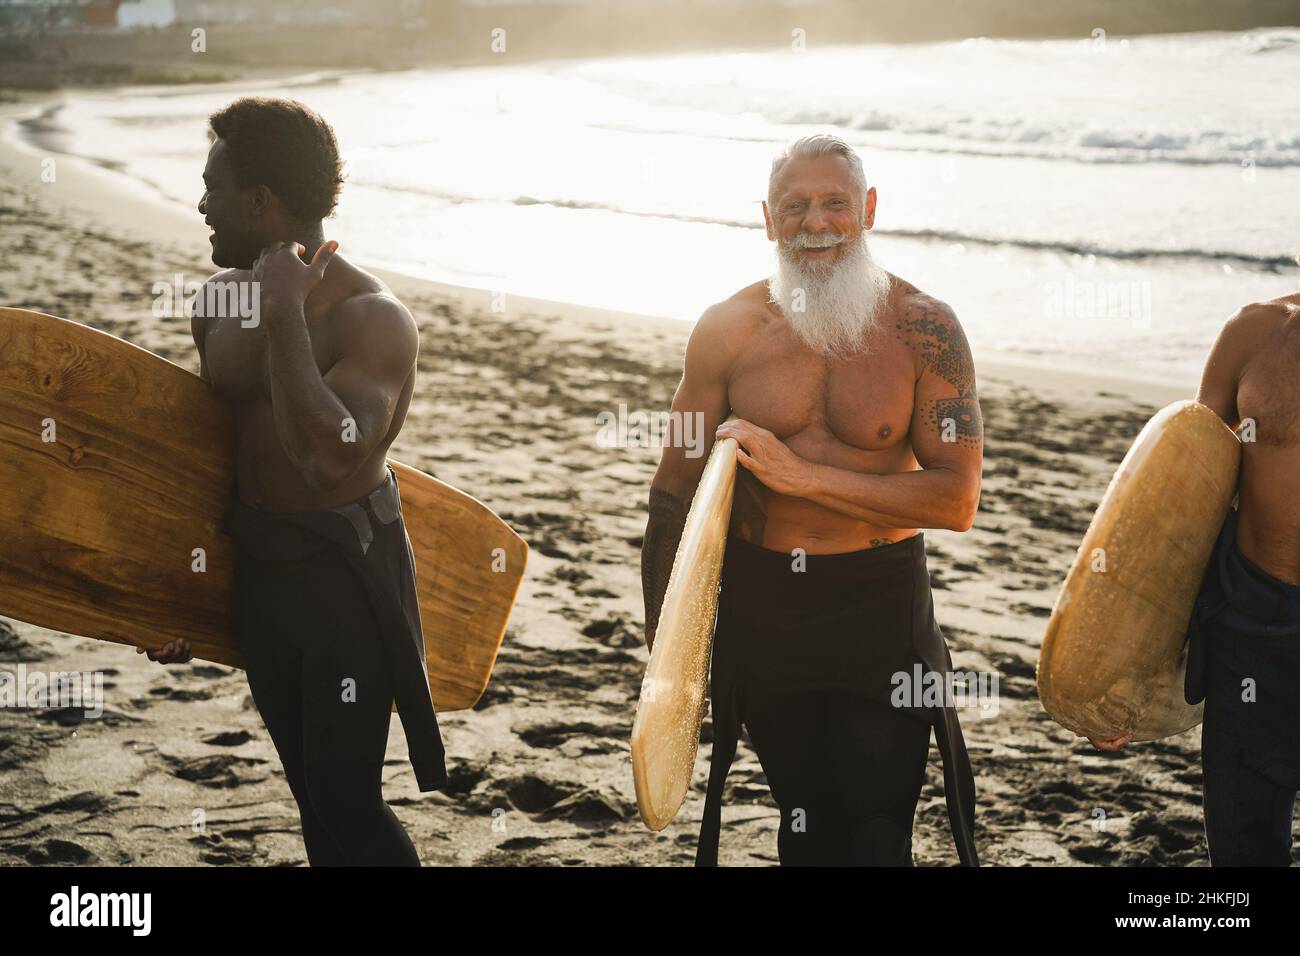 Surfer-Freunde mit mehreren Generationen, die nach der Surfstunde am Strand Spaß haben – konzentrieren Sie sich auf das Gesicht eines älteren Mannes Stockfoto